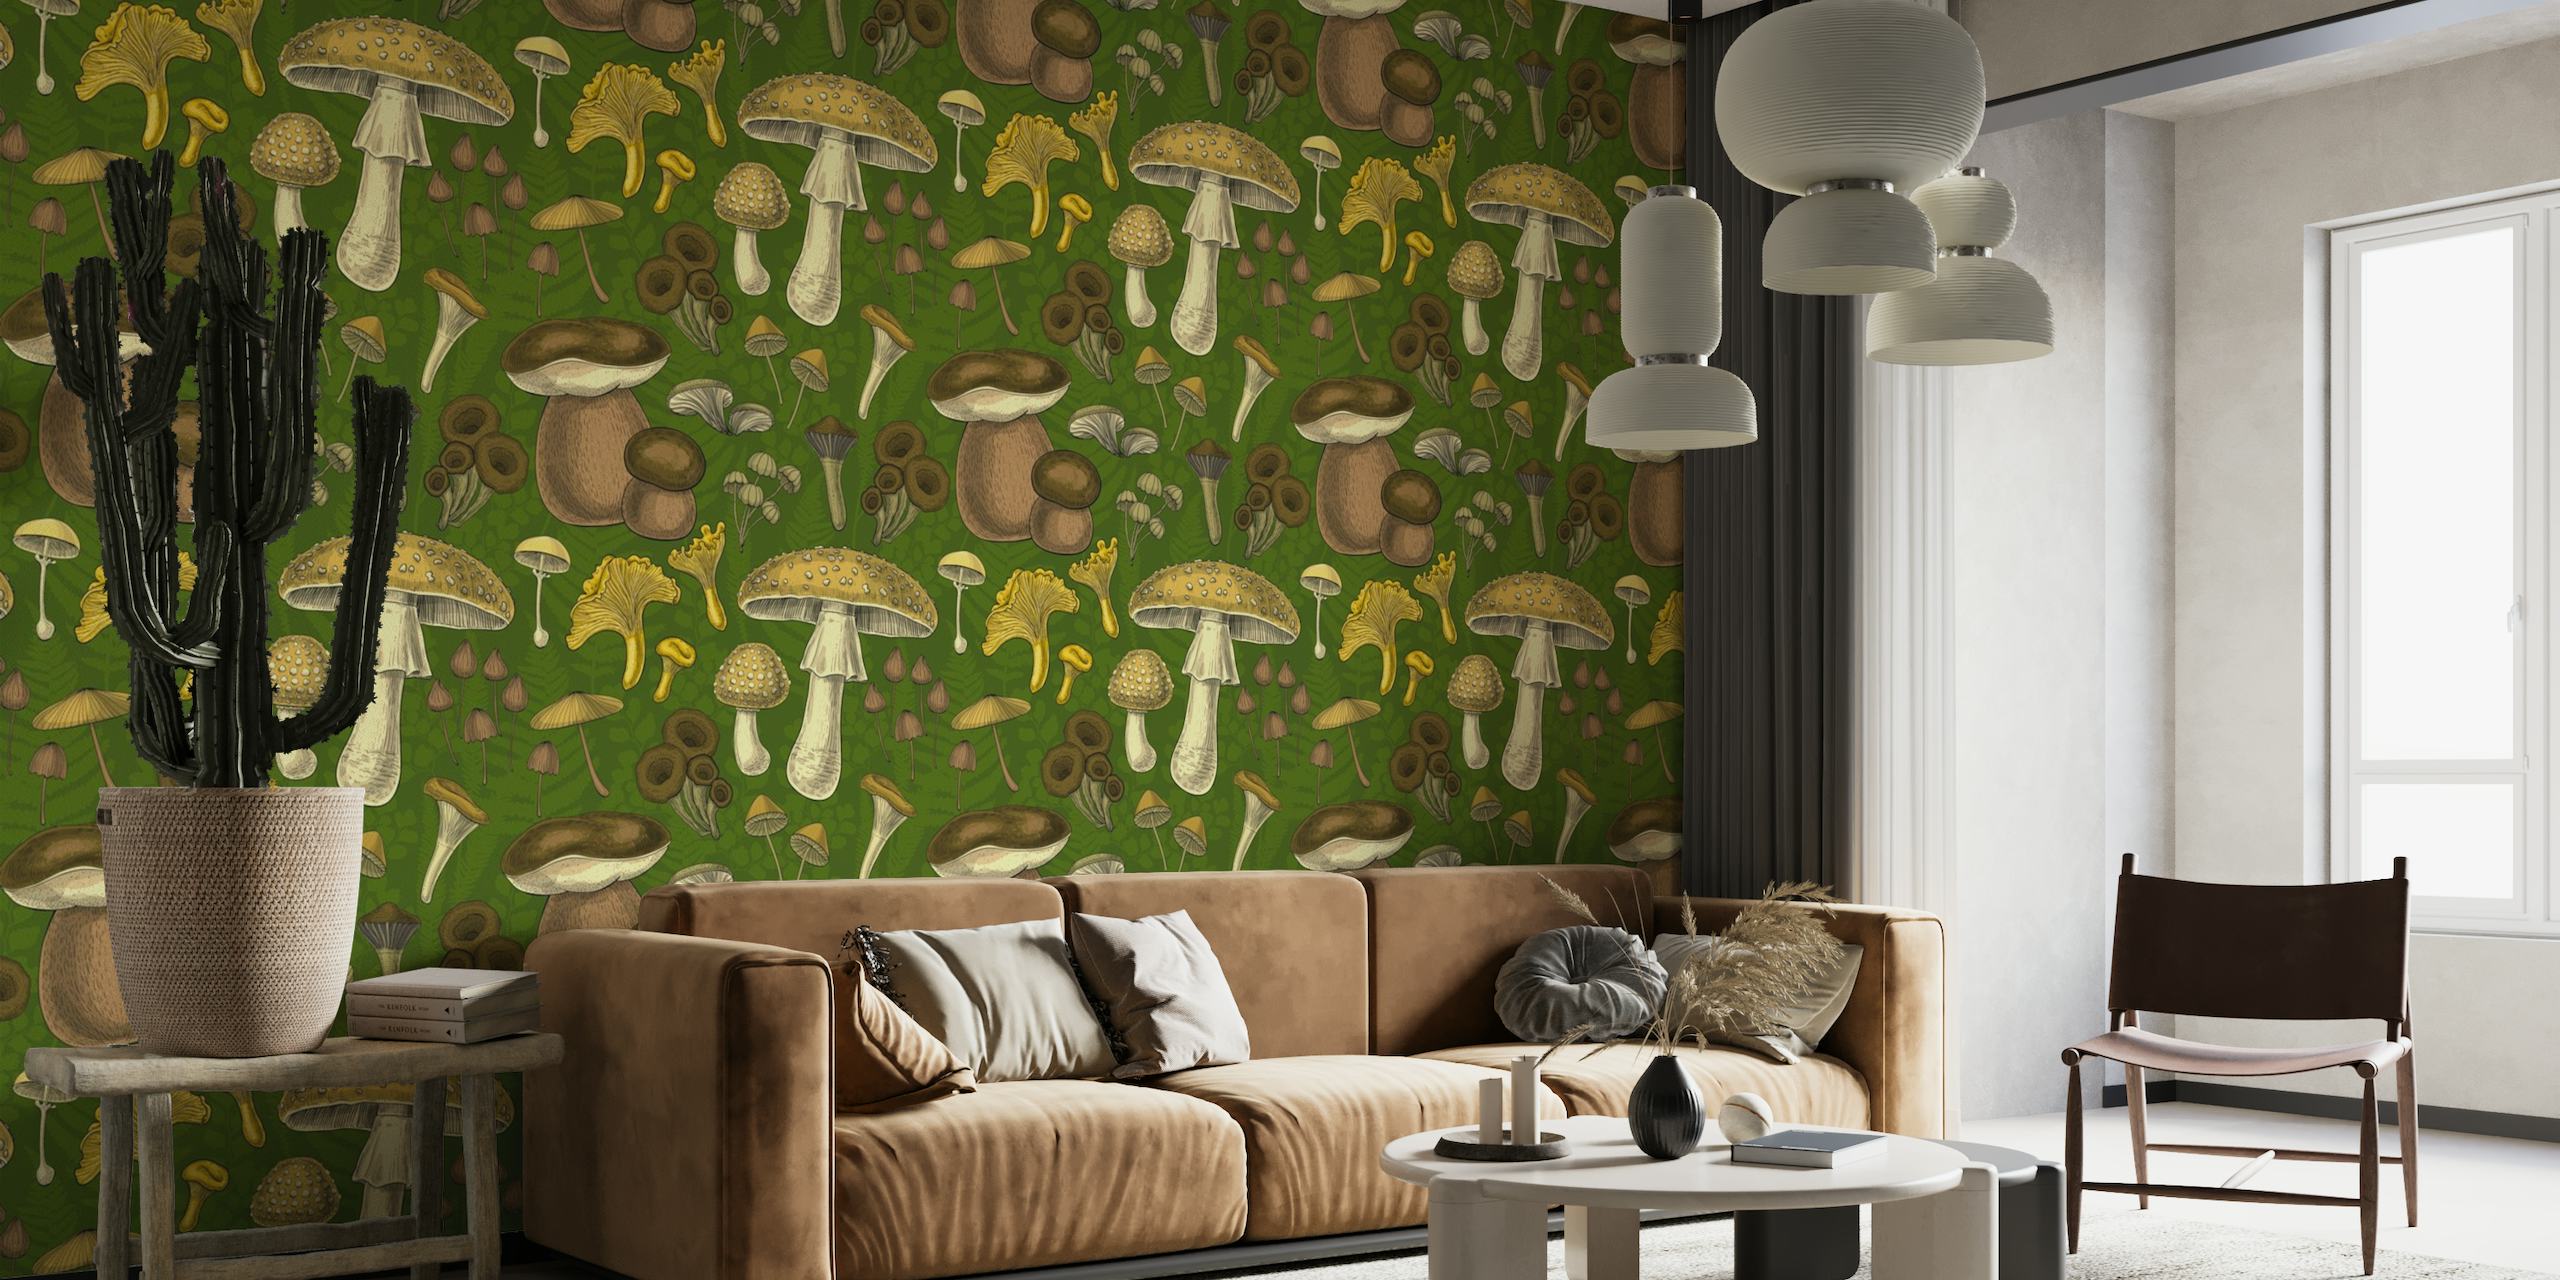 Illustratief fotobehang met een verscheidenheid aan wilde paddenstoelen op een groene achtergrond